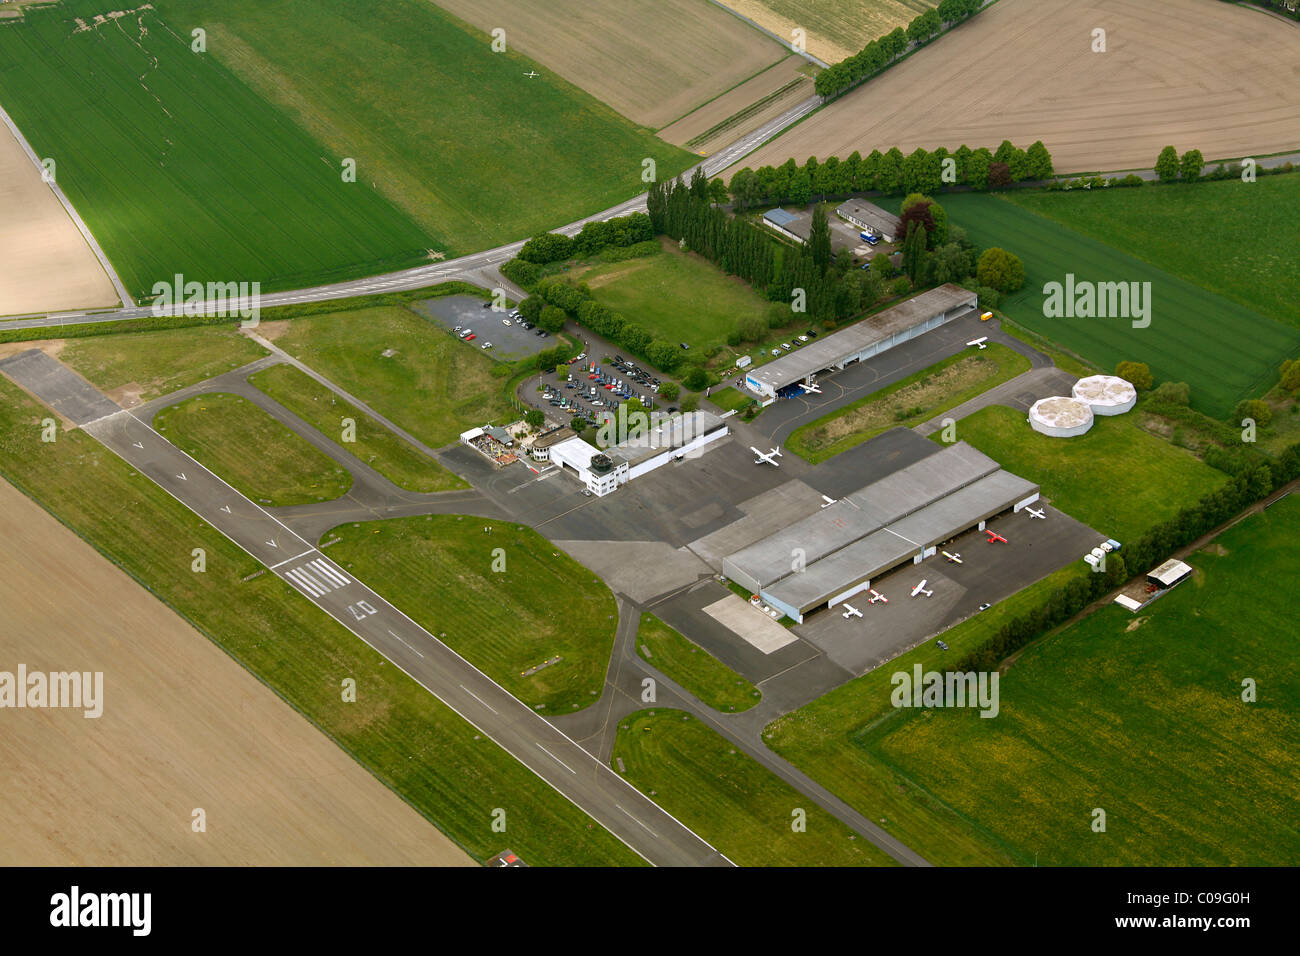 Aerial view, airplane hangar, General Aviation airfield, airfield runway EDLM Marl, Marl, Ruhrgebiet region Stock Photo